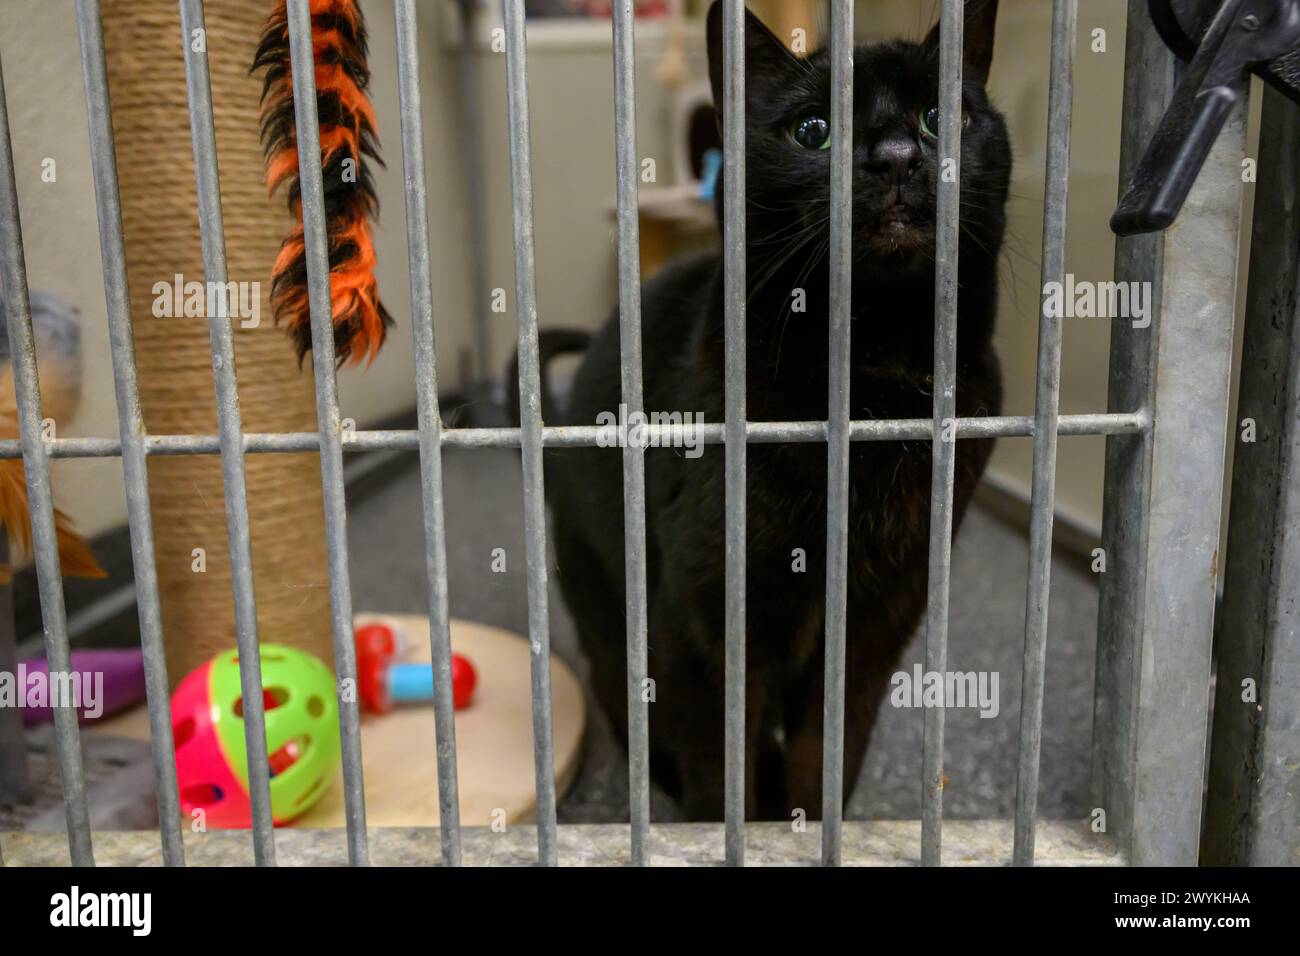 Stock d'images au centre de relogement de la SPCA écossaise, Hamilton Black Cat dans une cage Banque D'Images